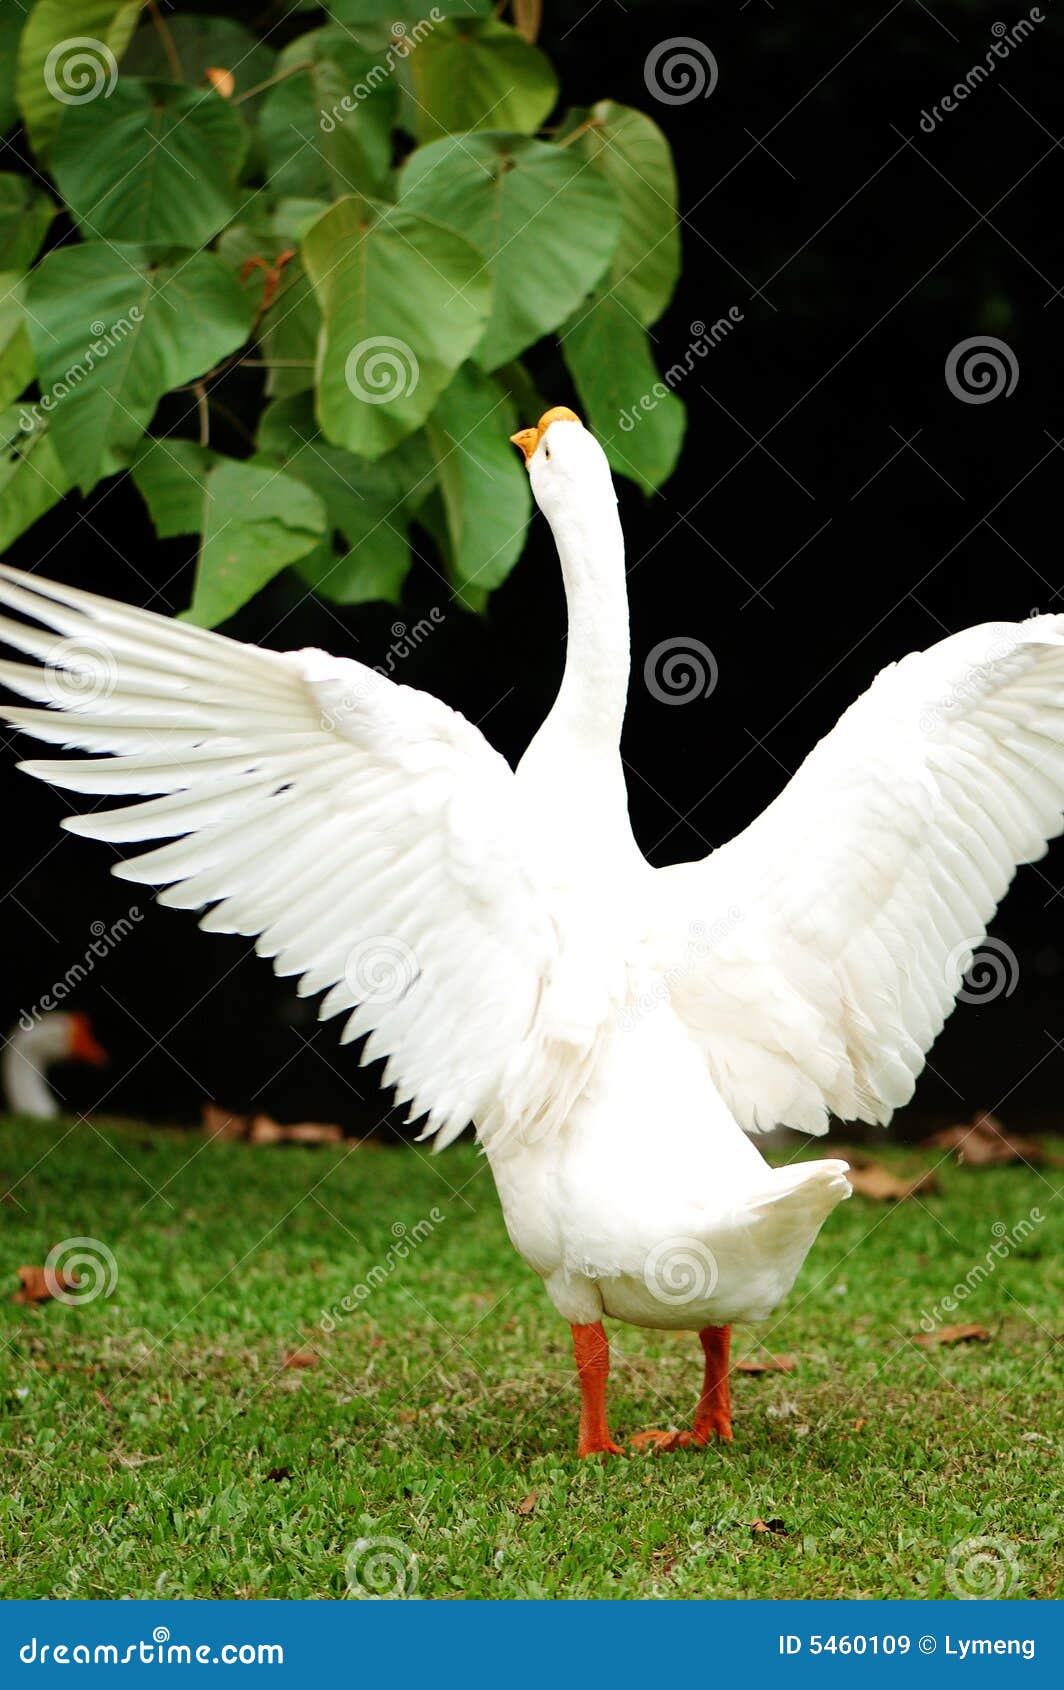 Gander stock image. Image of duckling, goose, grassland - 5460109